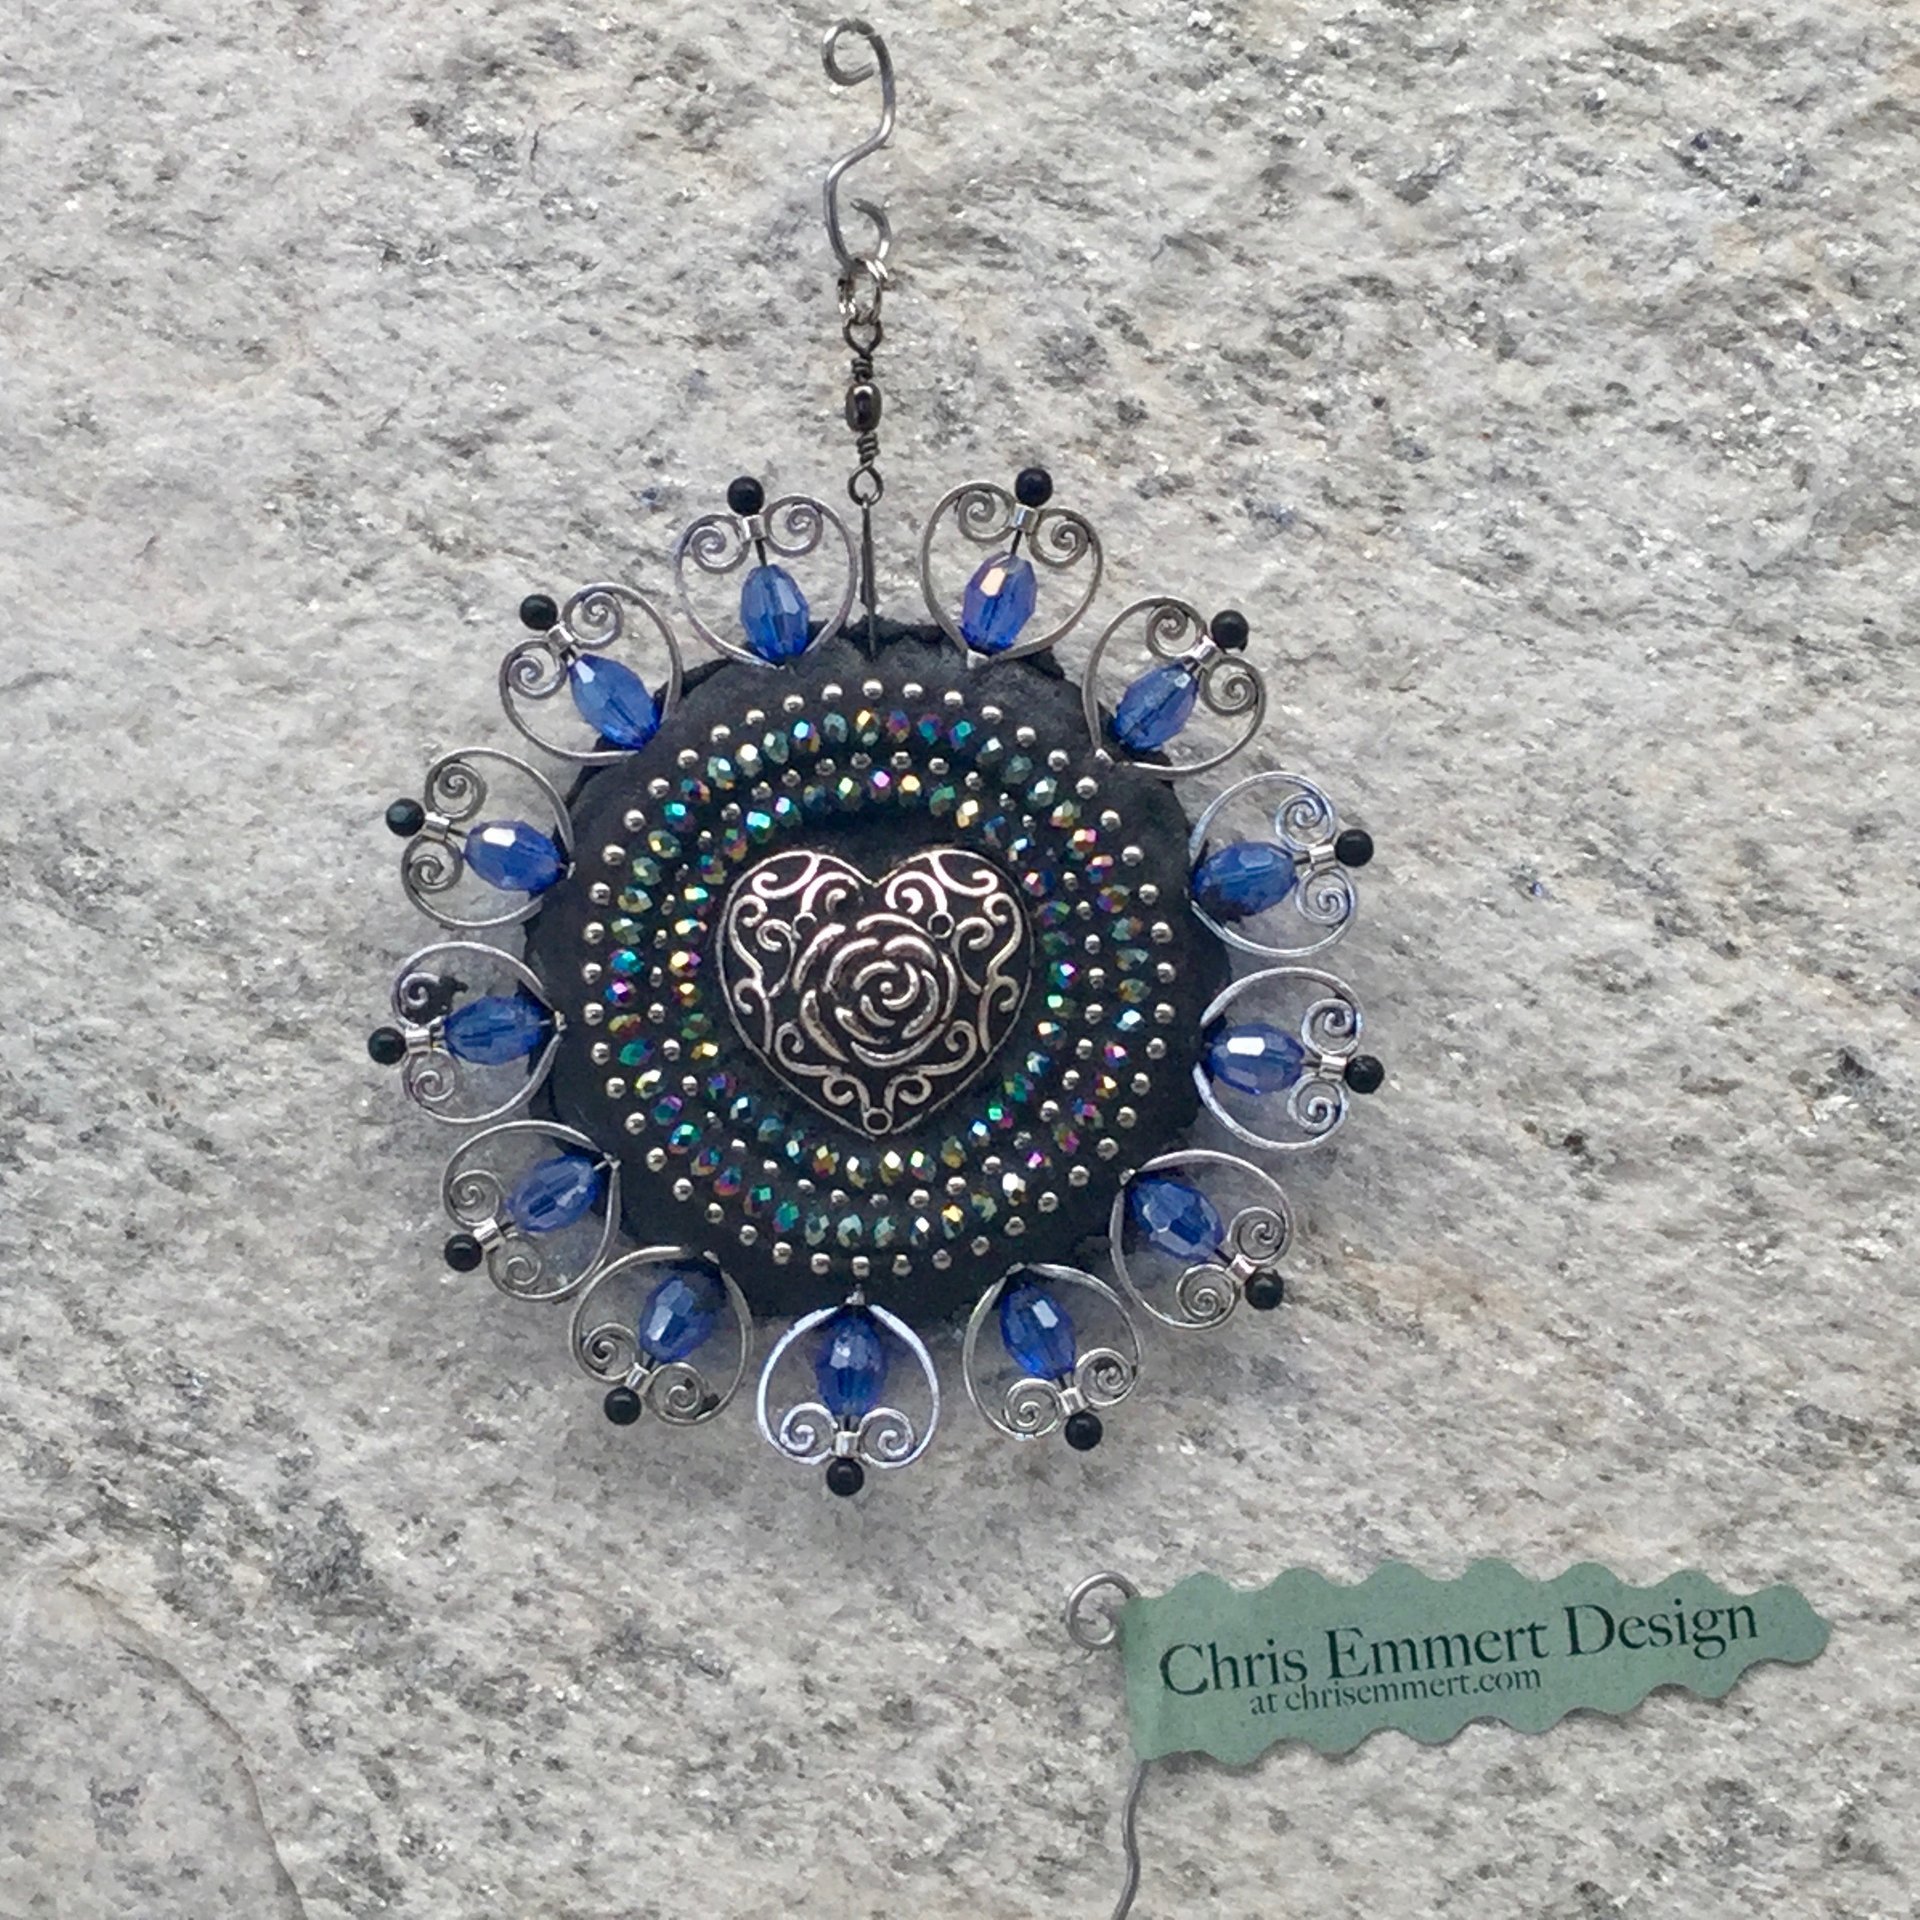 Blue Hearts garden spinner. Chris Emmert mosaic art.